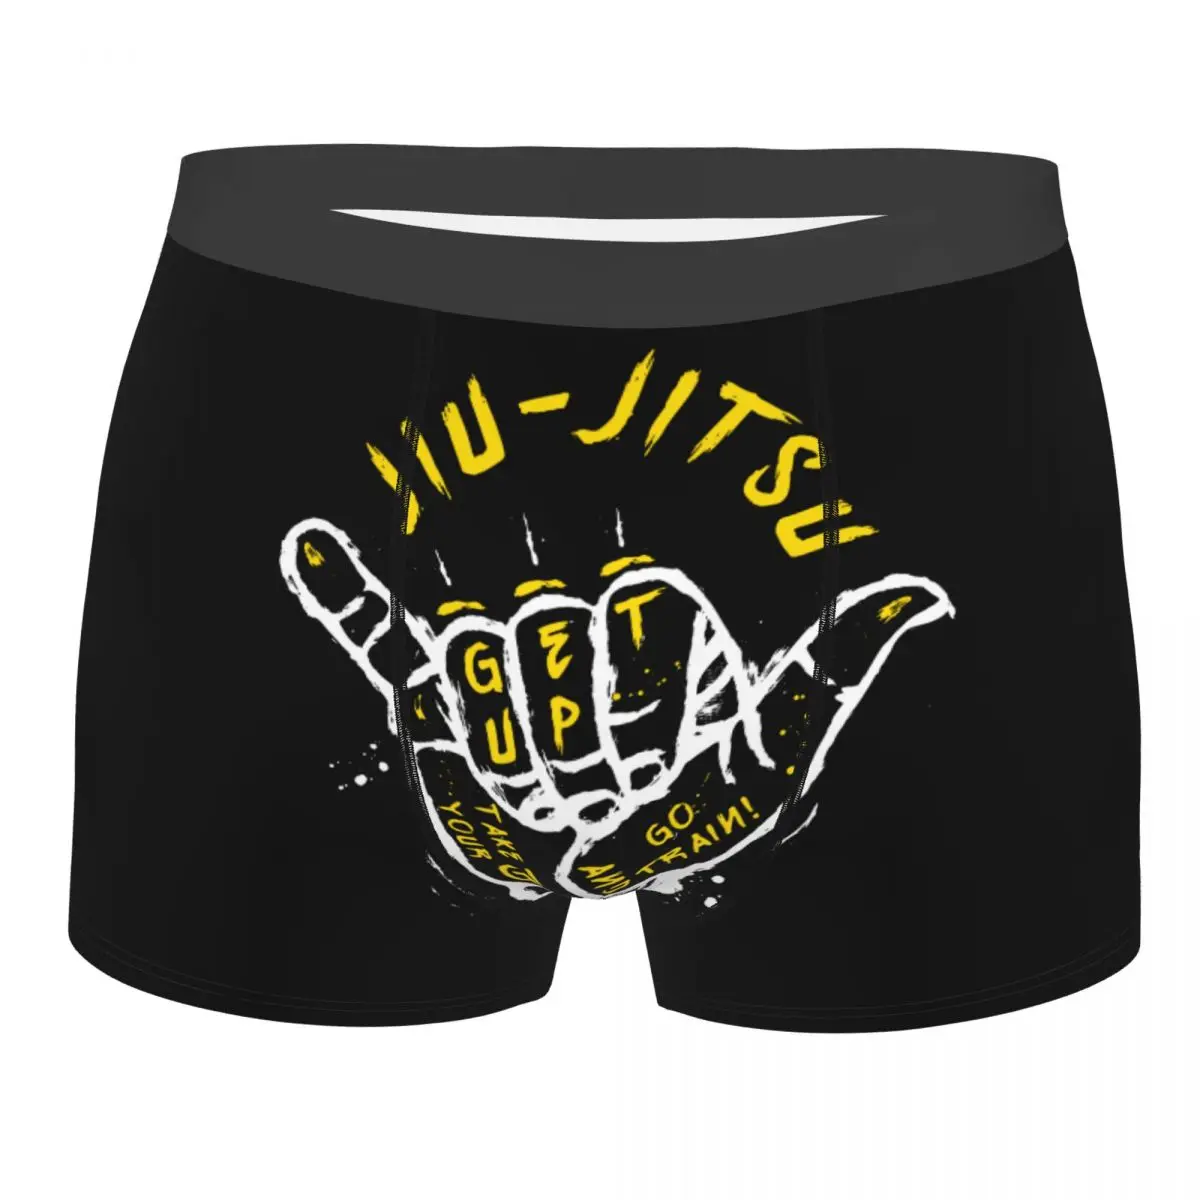 

Men Gesture Jiu-Jitsu Go Train 2 Brazilian Jiu Jitsu BJJ Funny Underwear Sexy Boxer Briefs Shorts Panties Soft Underpants S-XXL